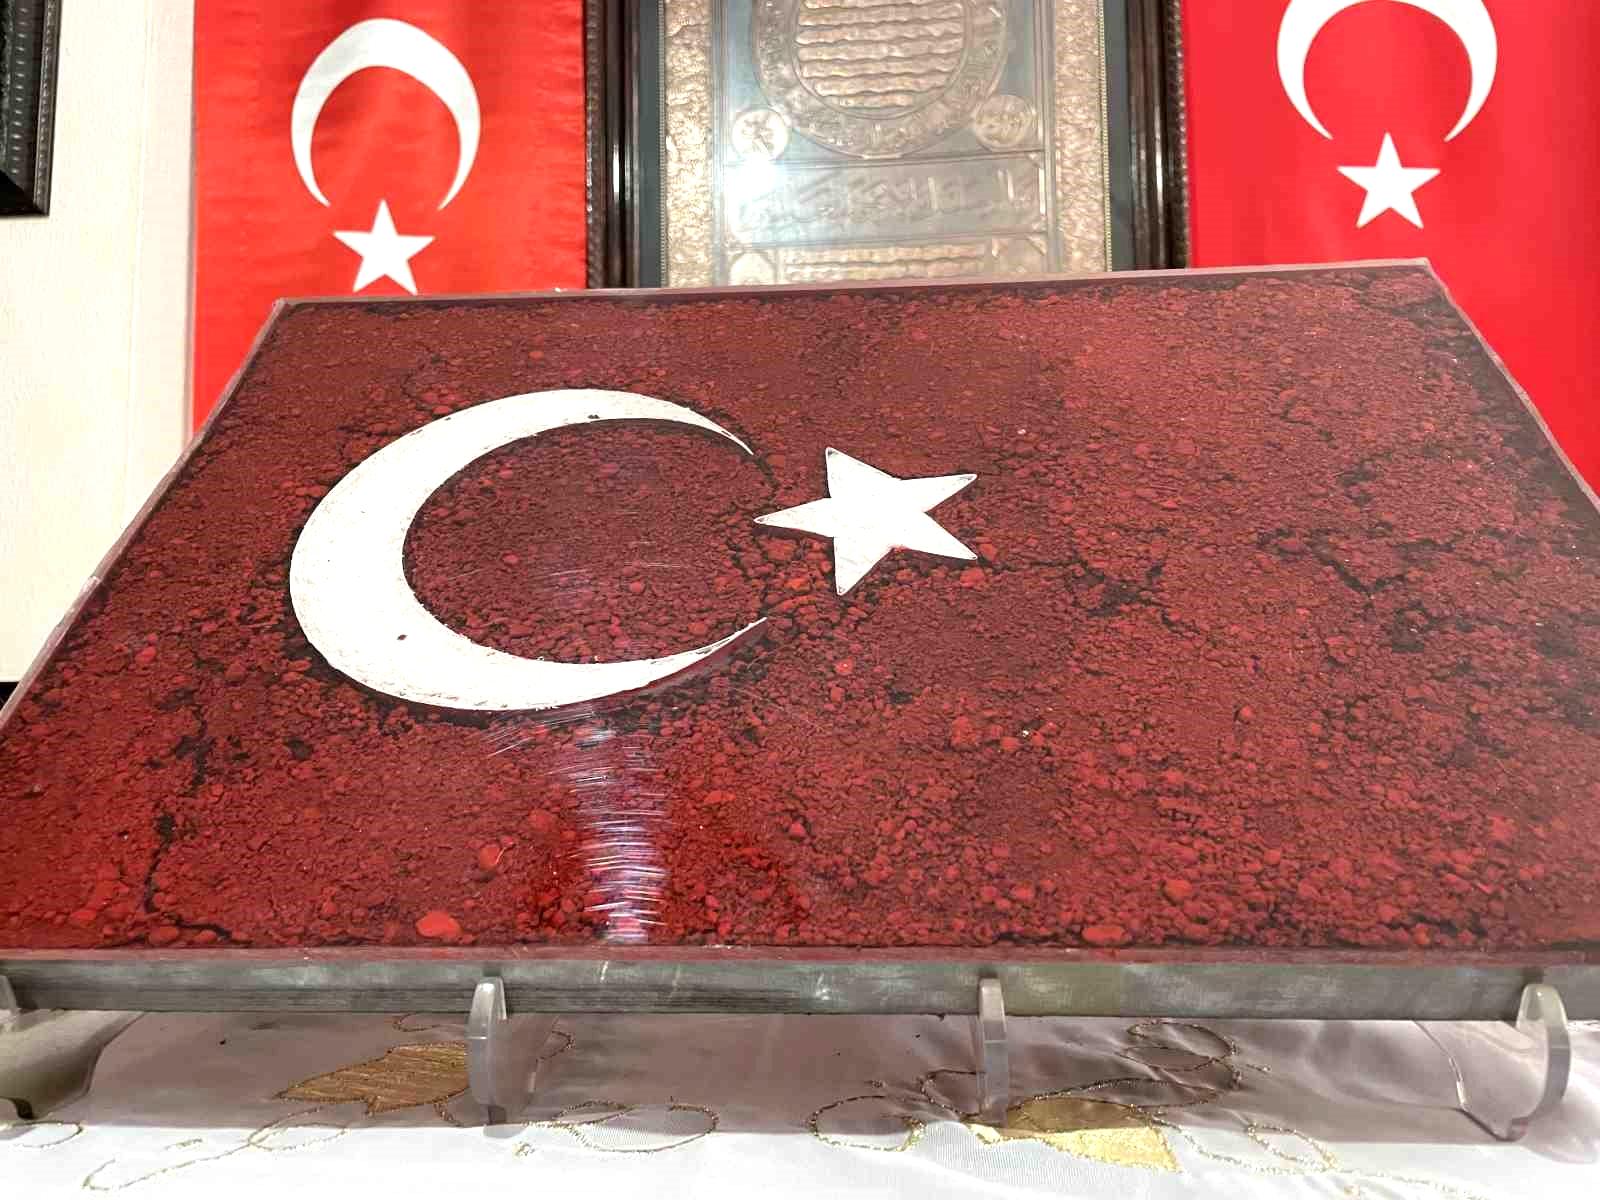 Hain darbe girişiminde şehit düşenlerin toprağı, bu tabloda Türk bayrağı olarak yıllarca korunacak